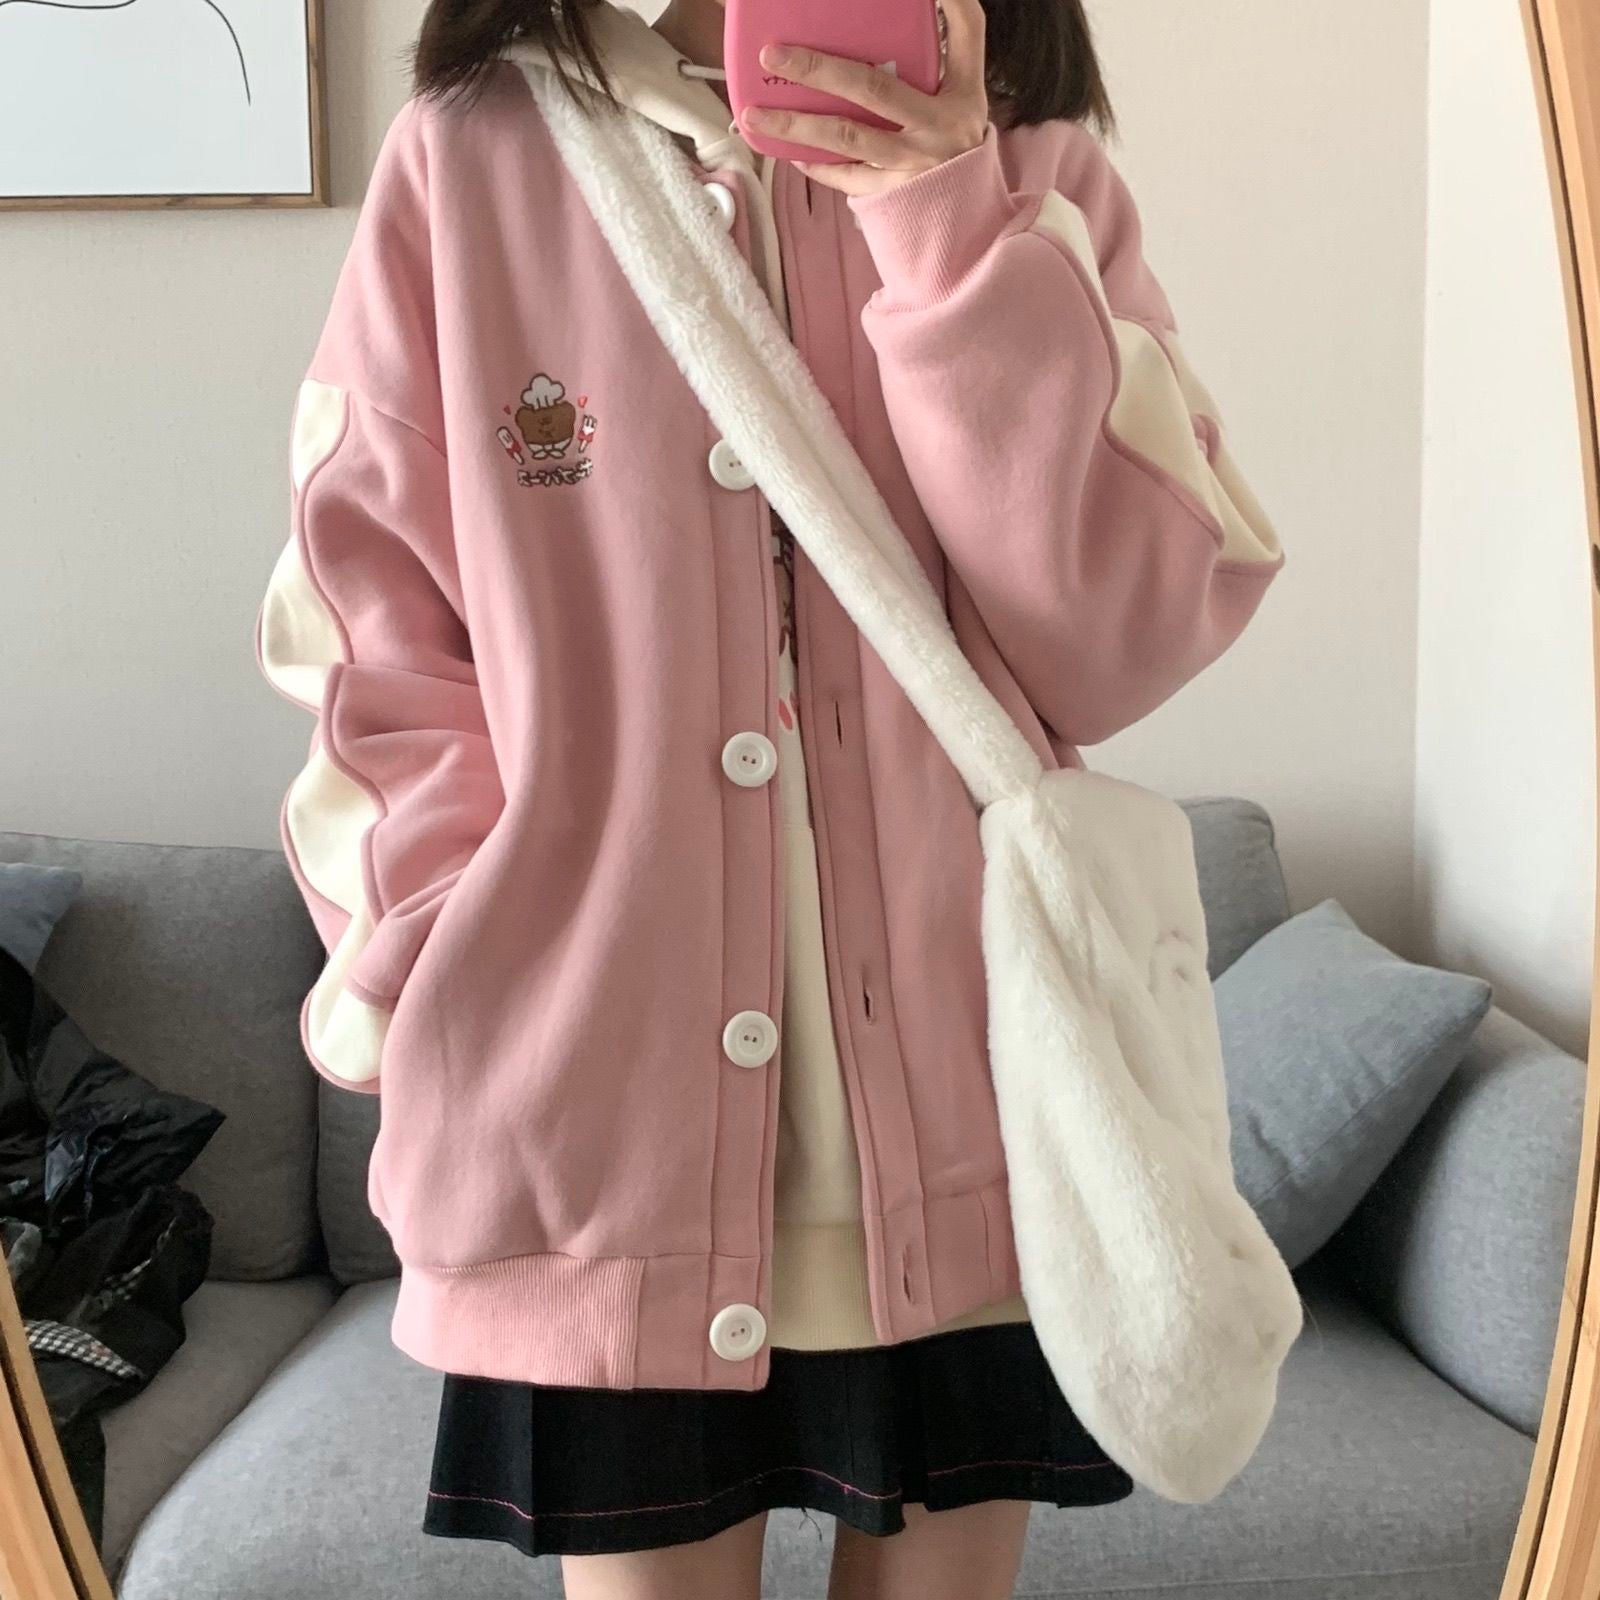 Drespot Japanese Kawaii Pink Hoodies Women Soft Girl Sweet Preppy Style Cute Cartoon Zip Up Sweatshirt Student Clothes  Autumn